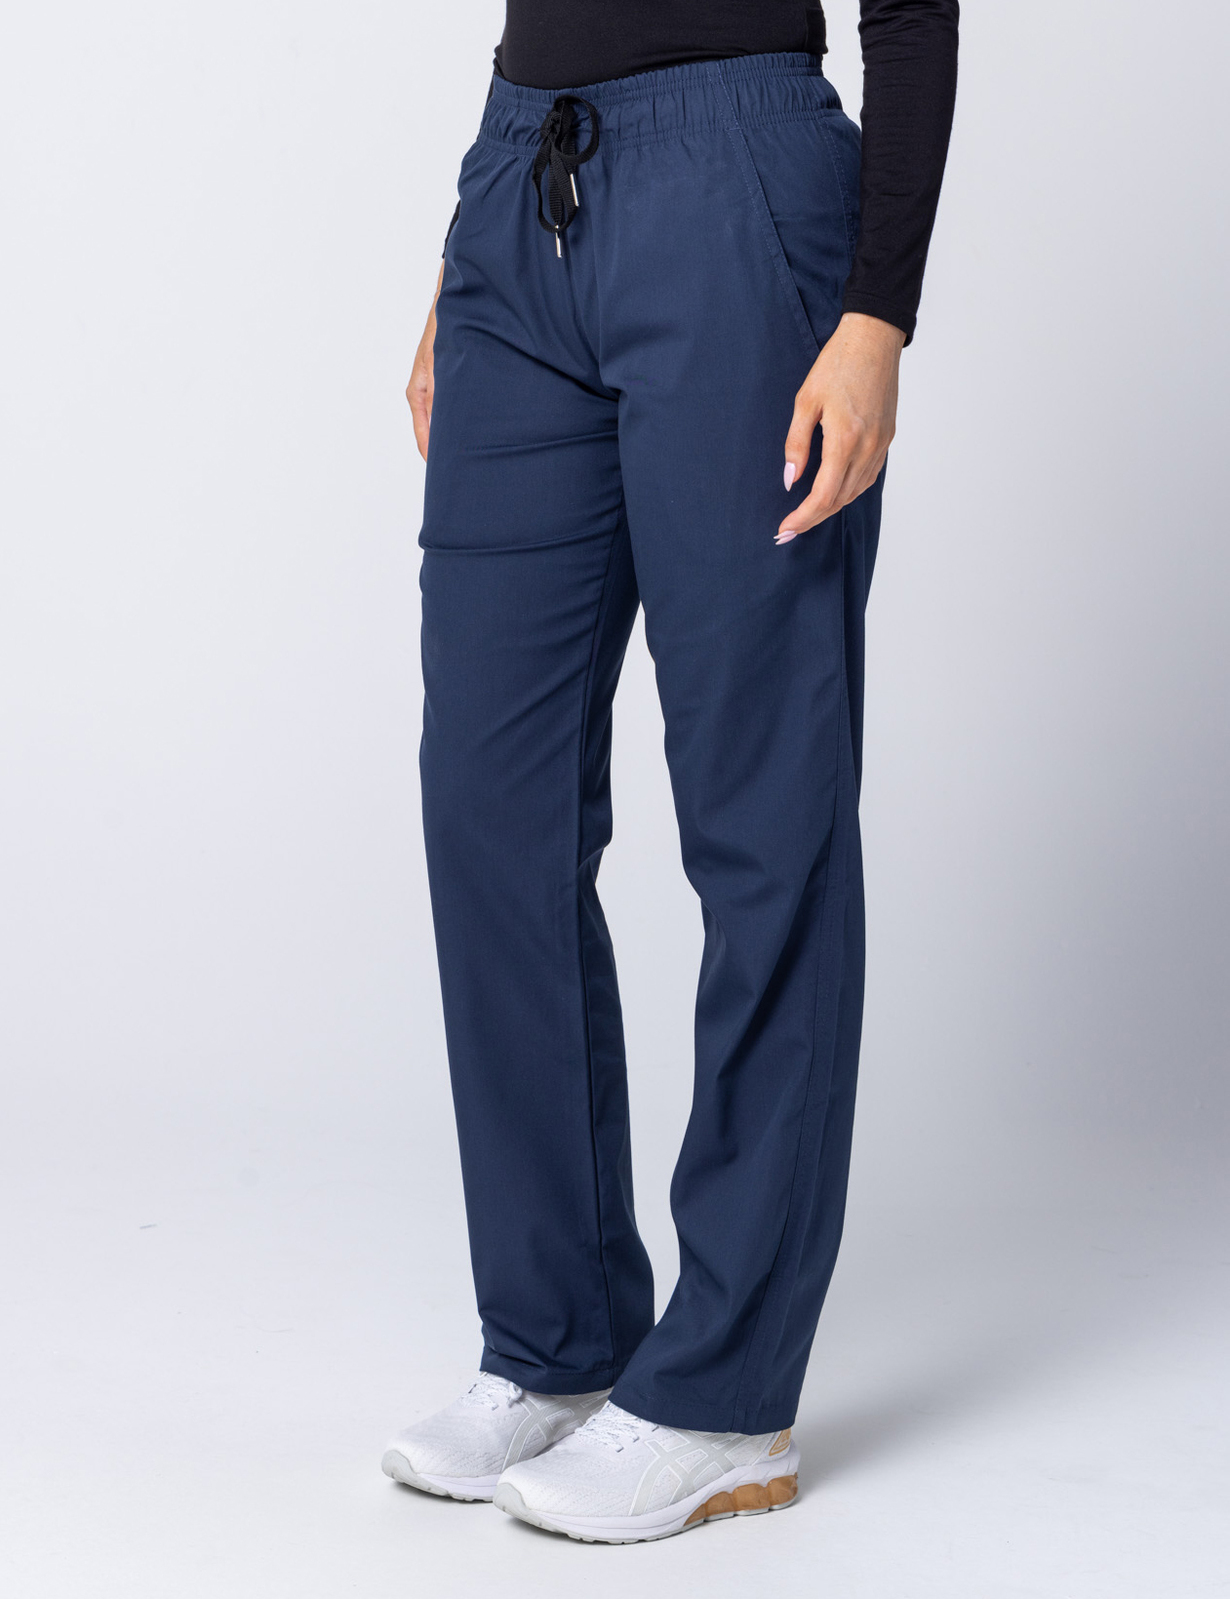 Women's Regular Cut Pants - Navy - X Small